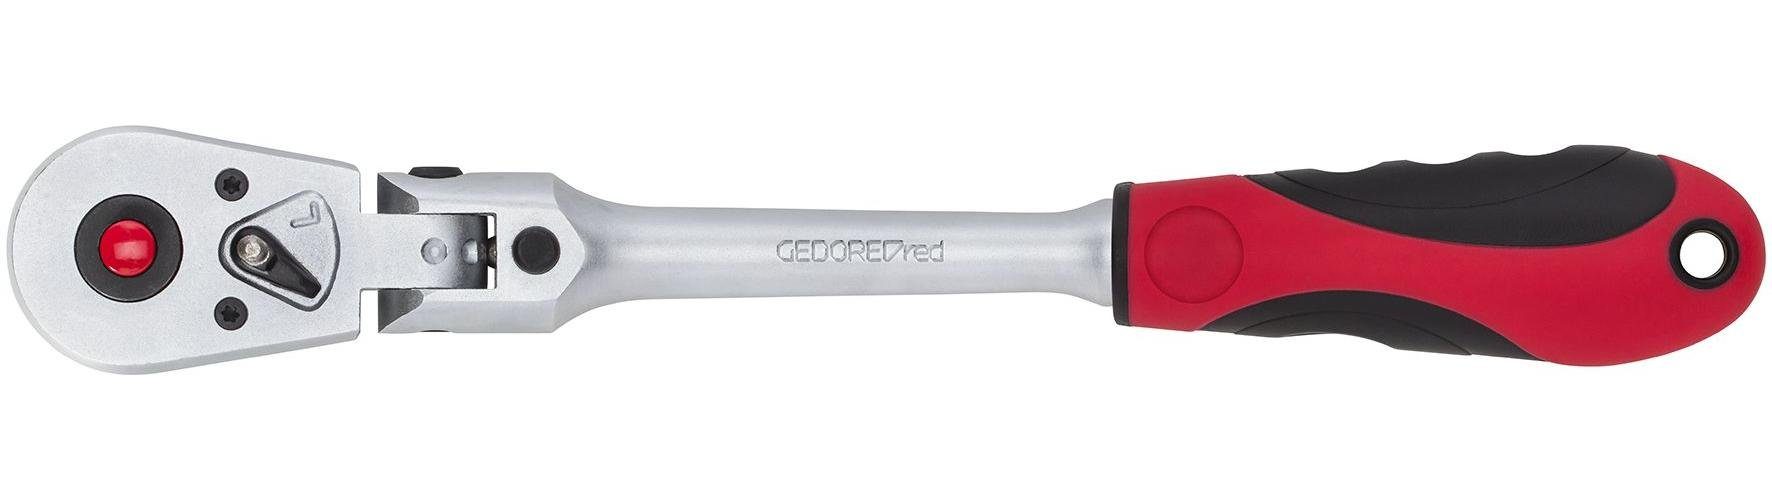 Gedore Red Umschaltknarre R50120027 2K-Gelenk-Umschaltknarre 3/8 246 mm RSW5°